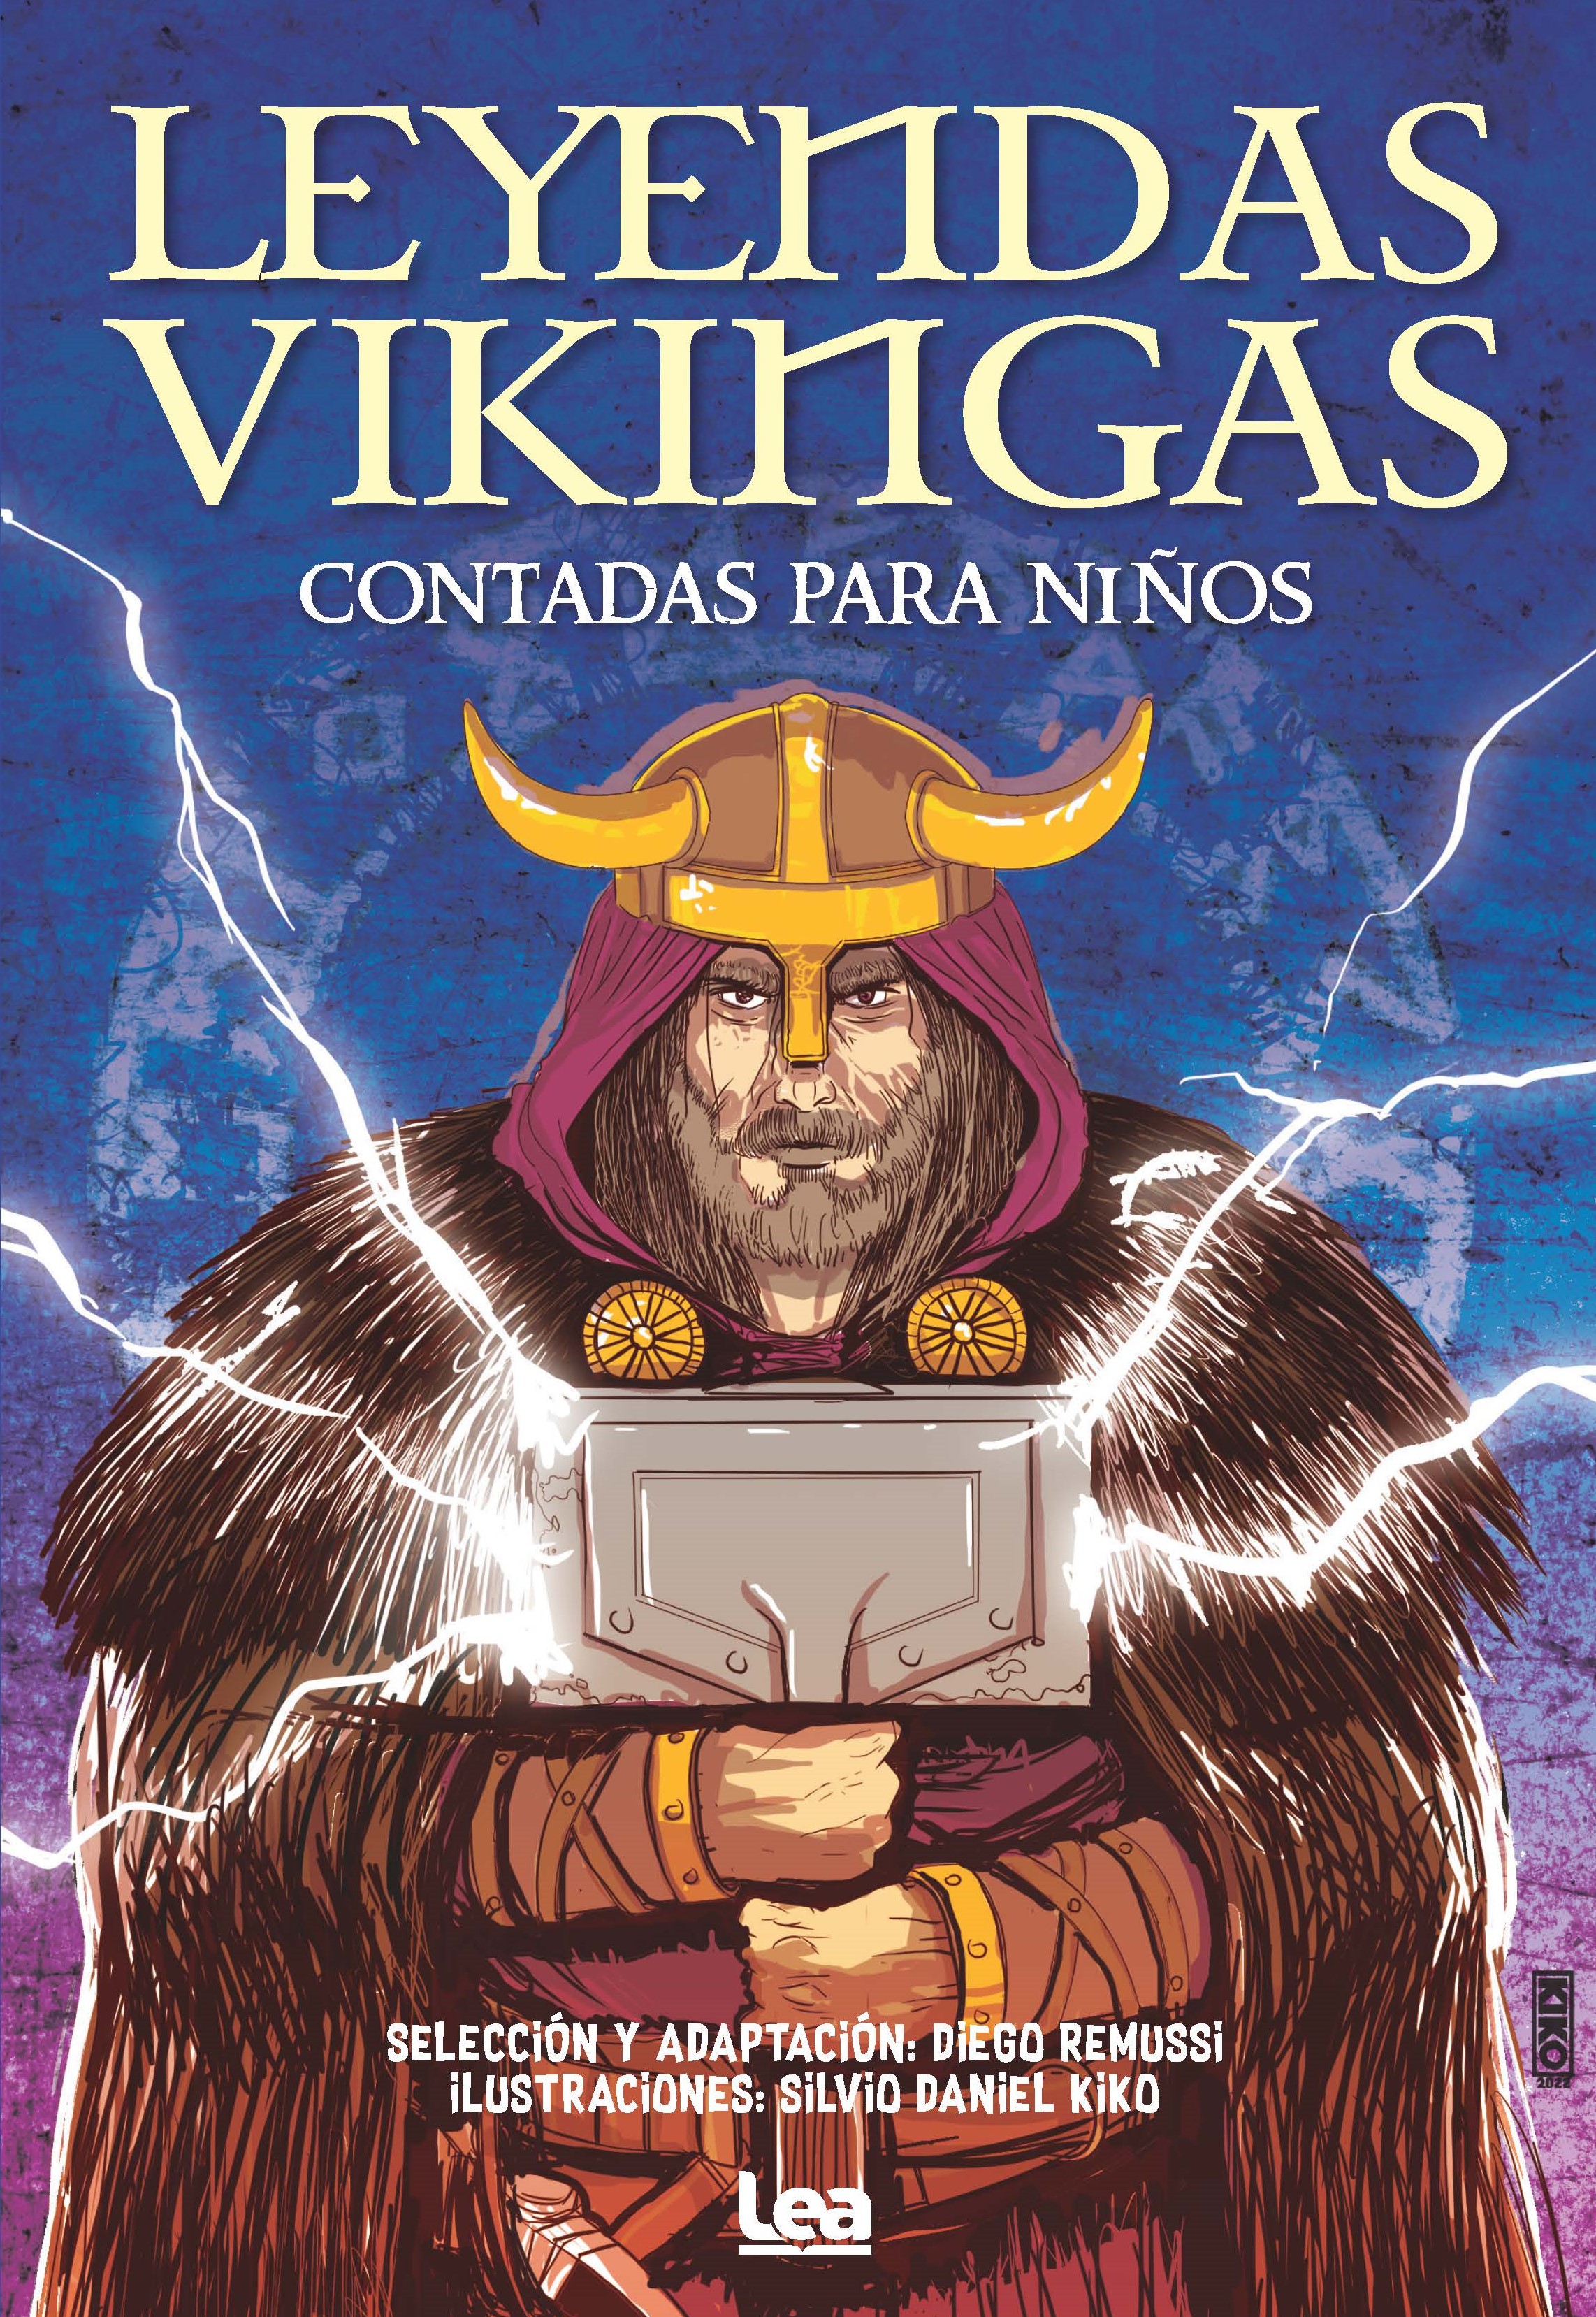 Leyendas vikingas contadas para niños - Ediciones LEA España